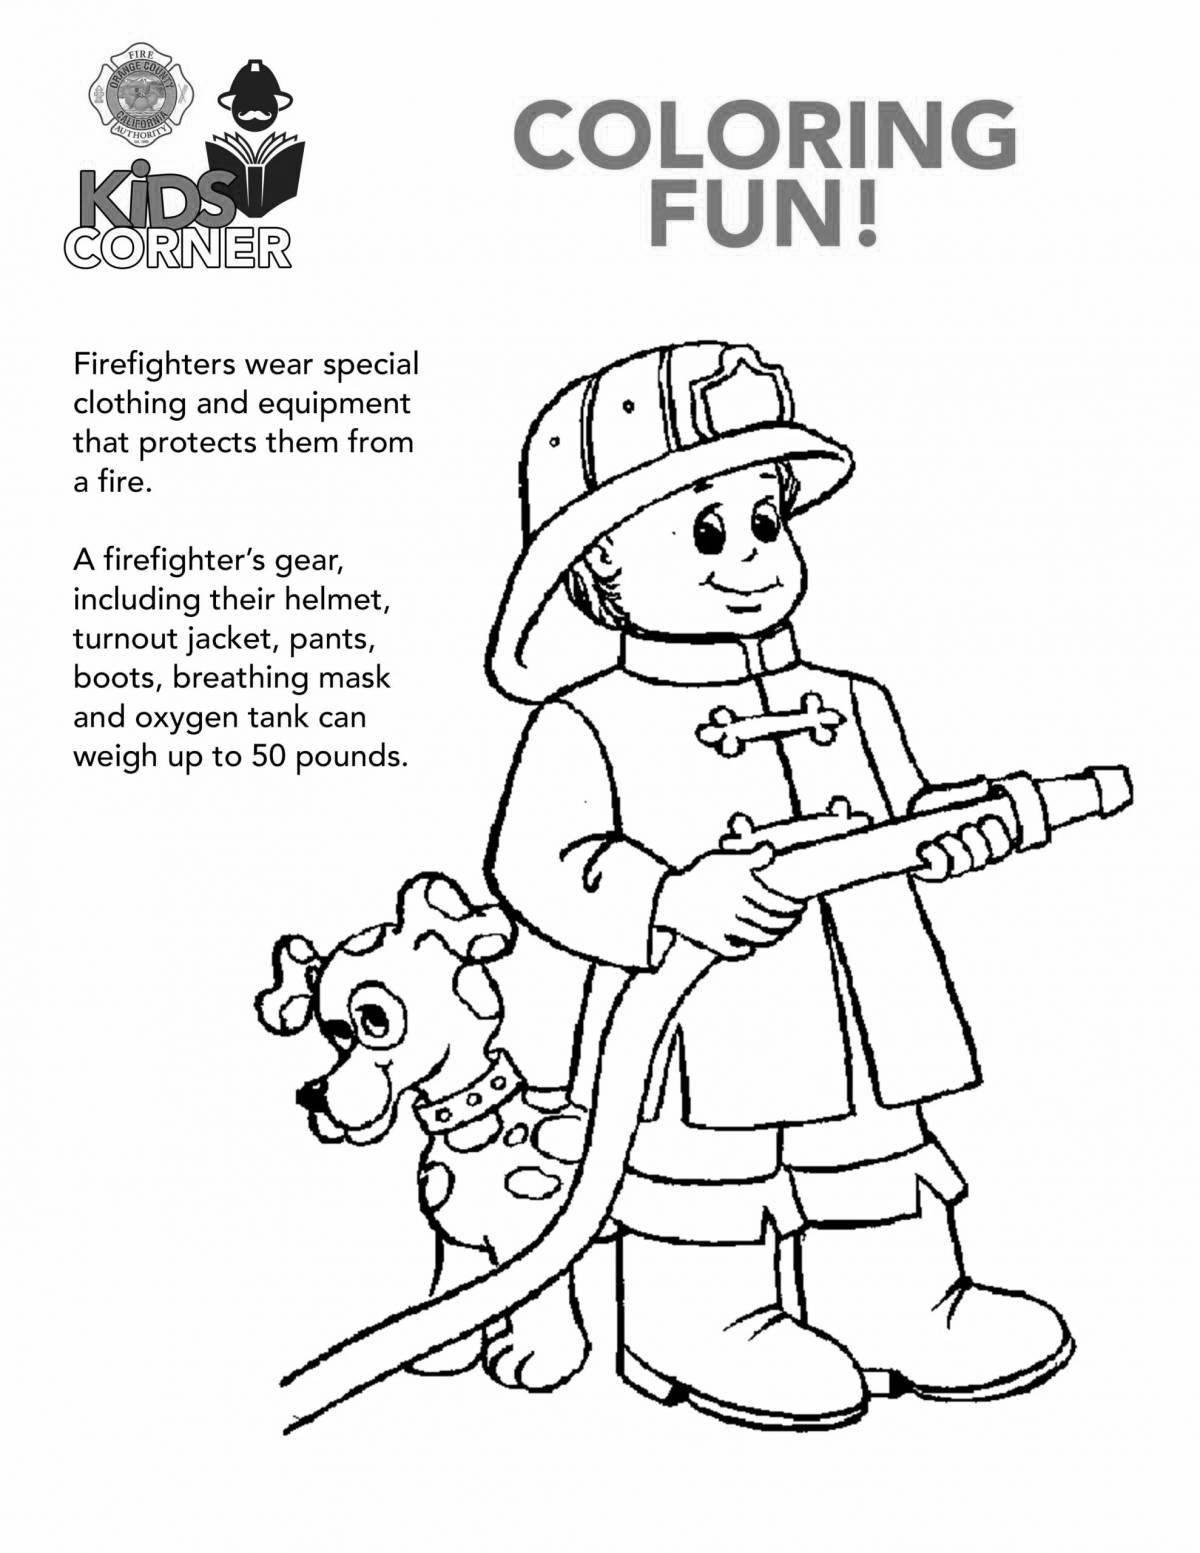 Adorable fireman drawing for kids